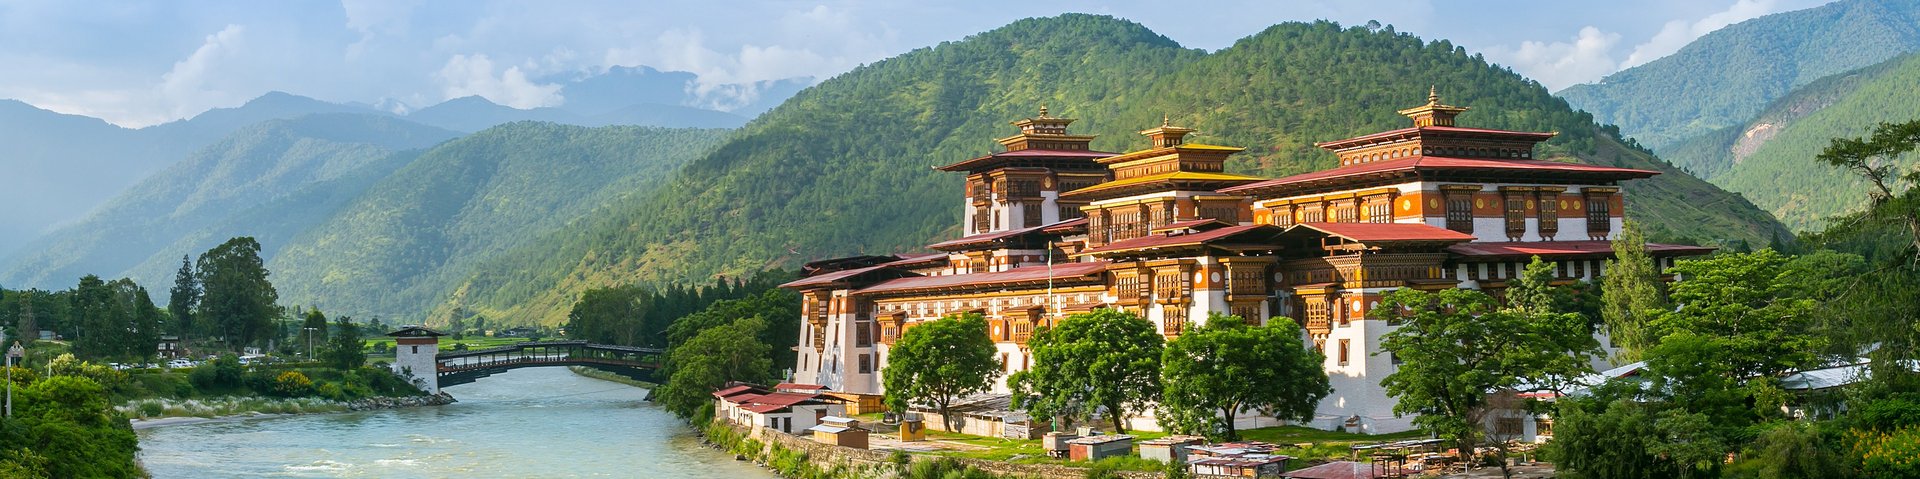 Das Kloster Punakha Dzong in Bhutan am Ufer des Flusses